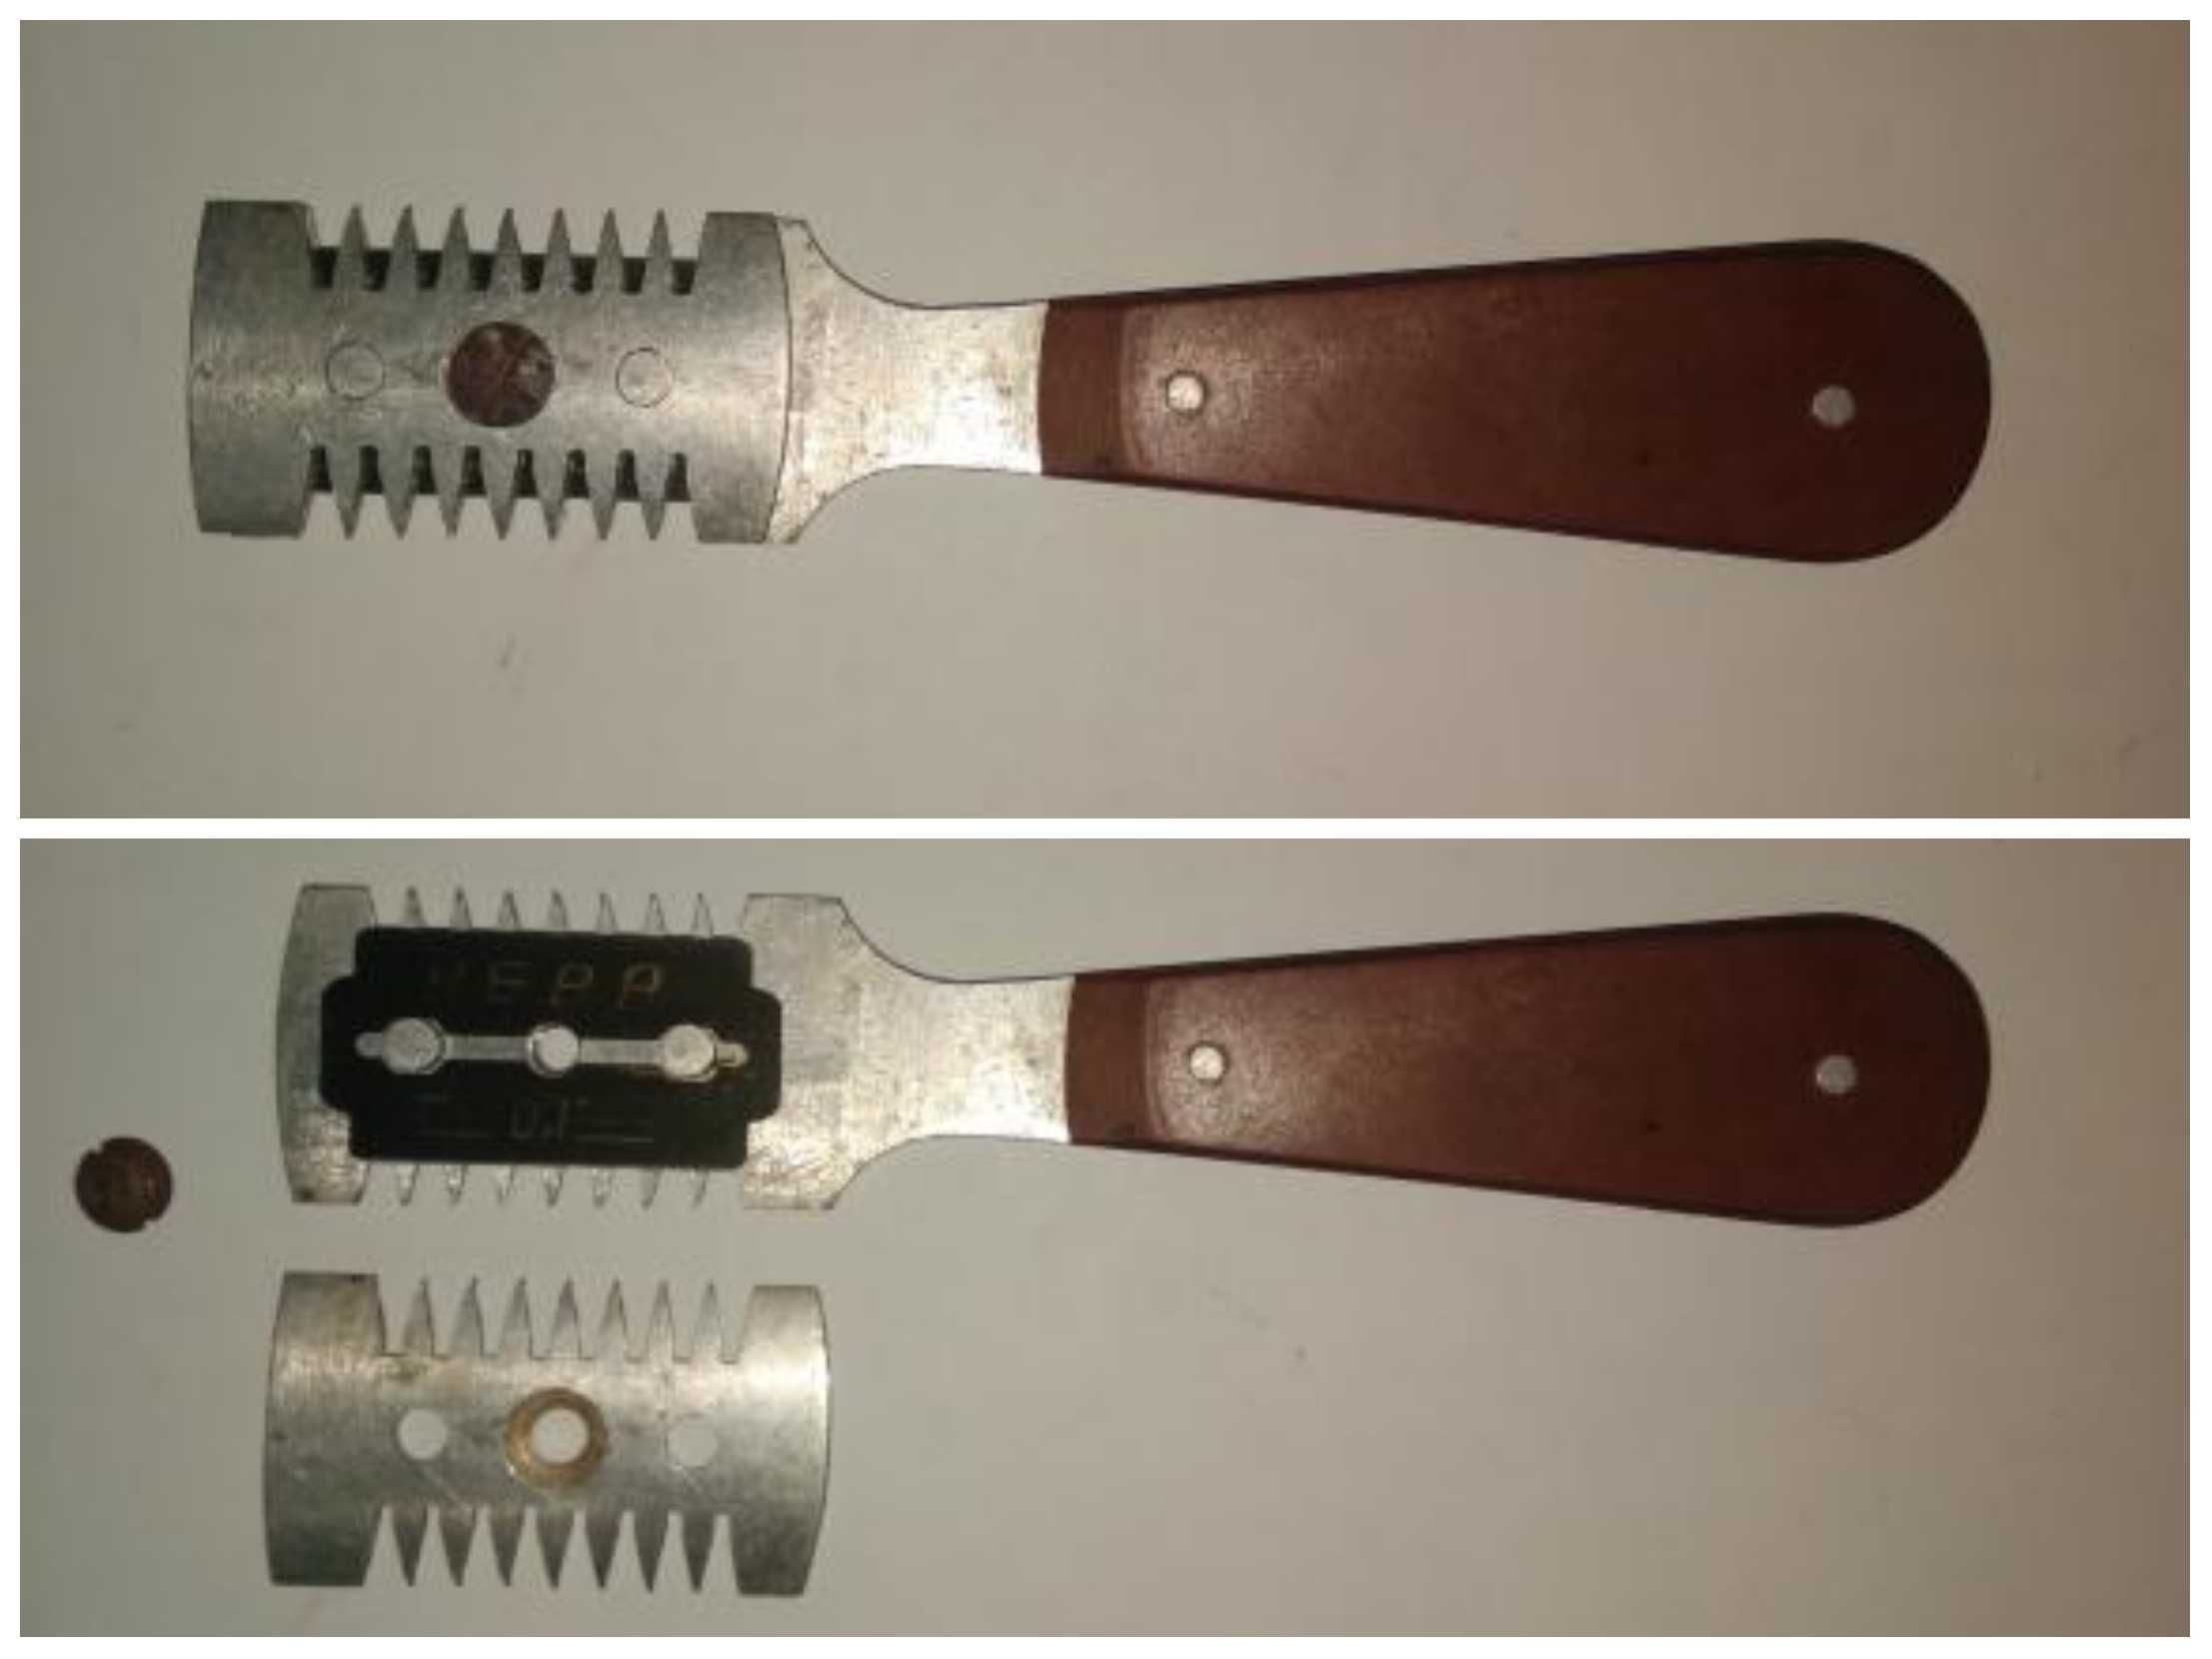 Станок бритвенный для бритья бритвенный аппарат кассеты Спутник СССР